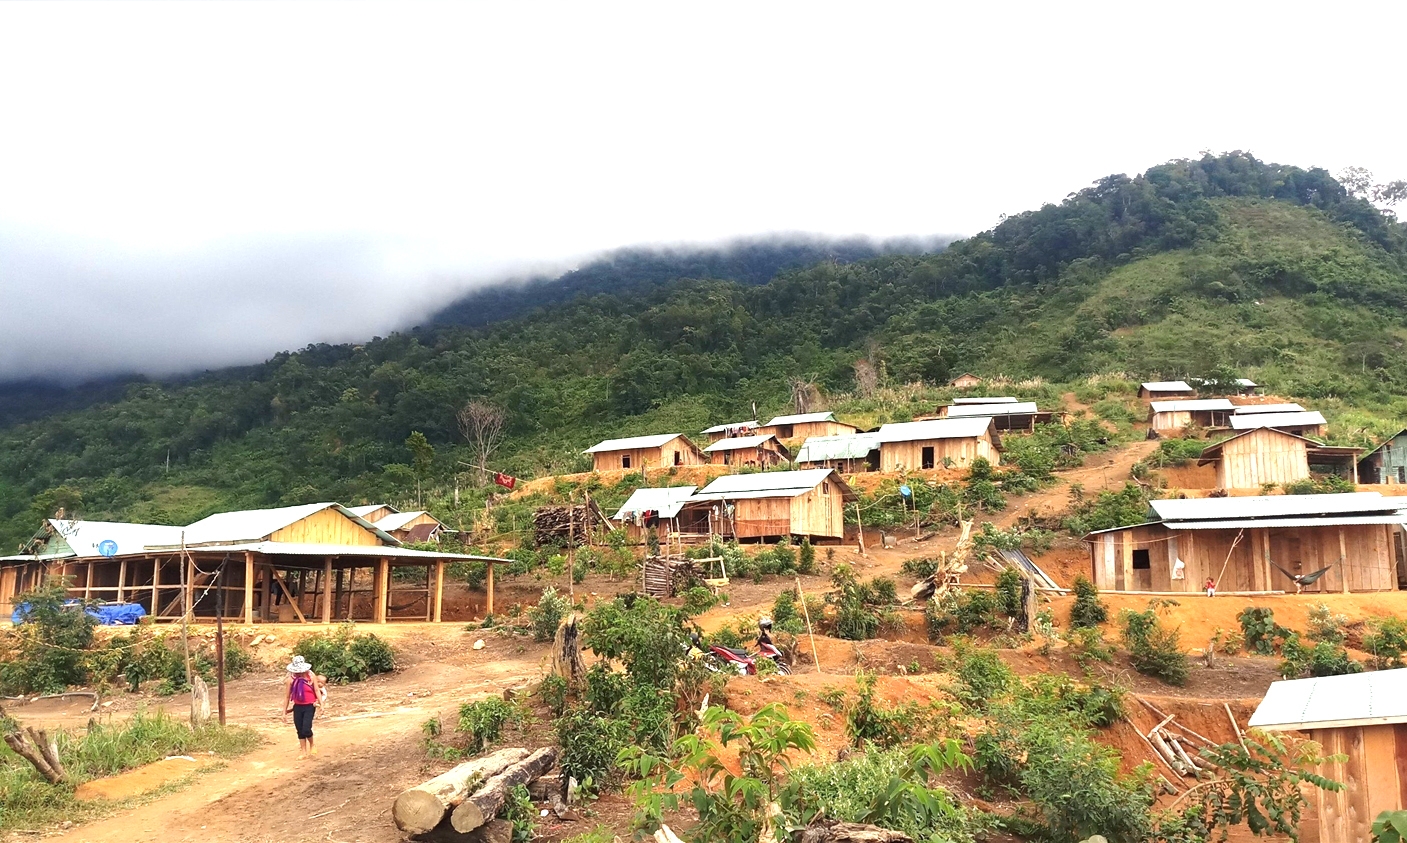 Nhu cầu xóa nhà tạm, nhà dột nát ở các huyện miền núi Quảng Nam còn rất nhiều